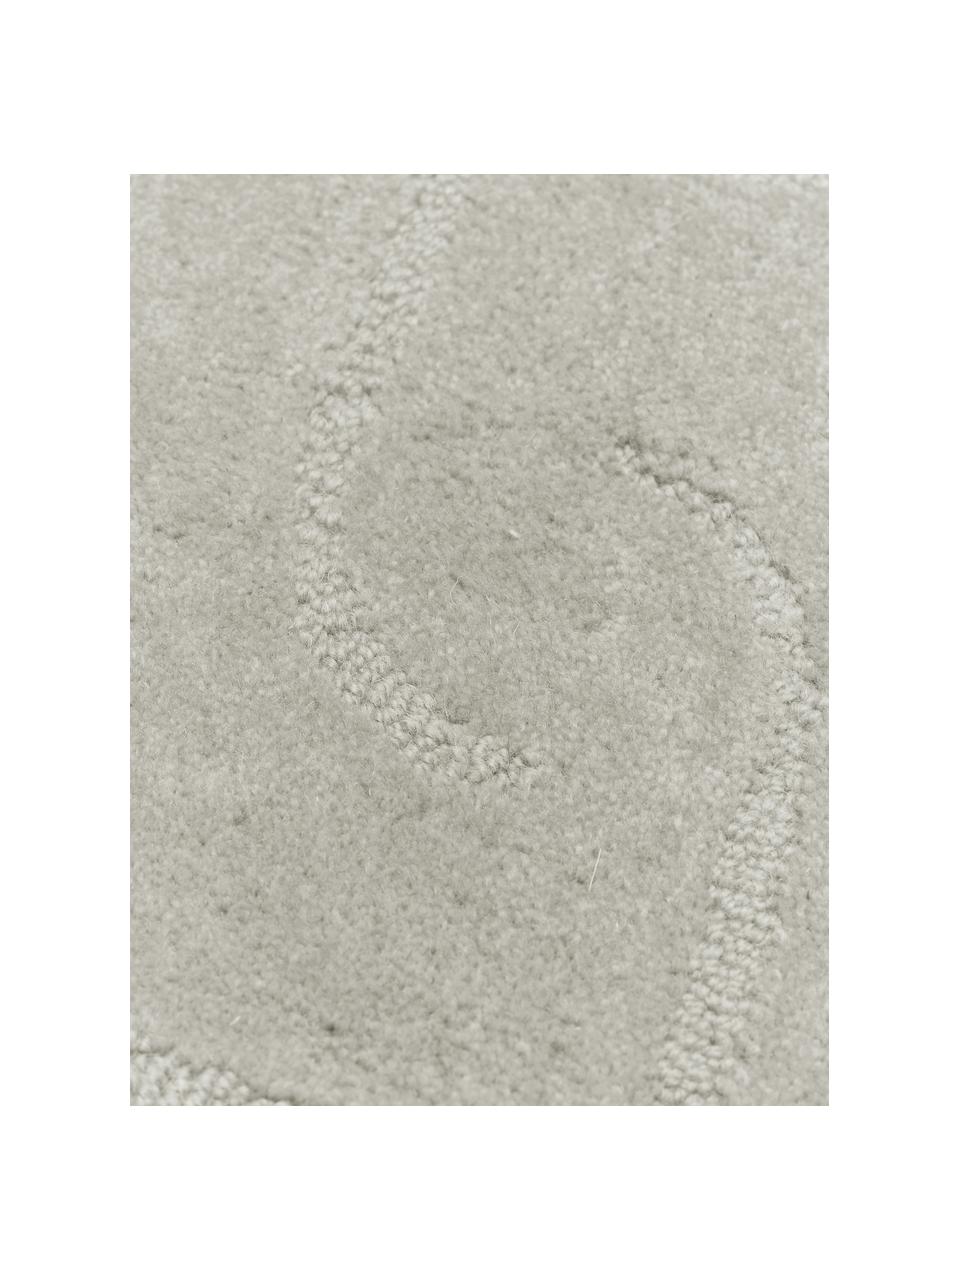 Handgetufteter Wollteppich Mason, Flor: 100 % Wolle, Hellgrau, B 160 x L 230 cm (Größe M)